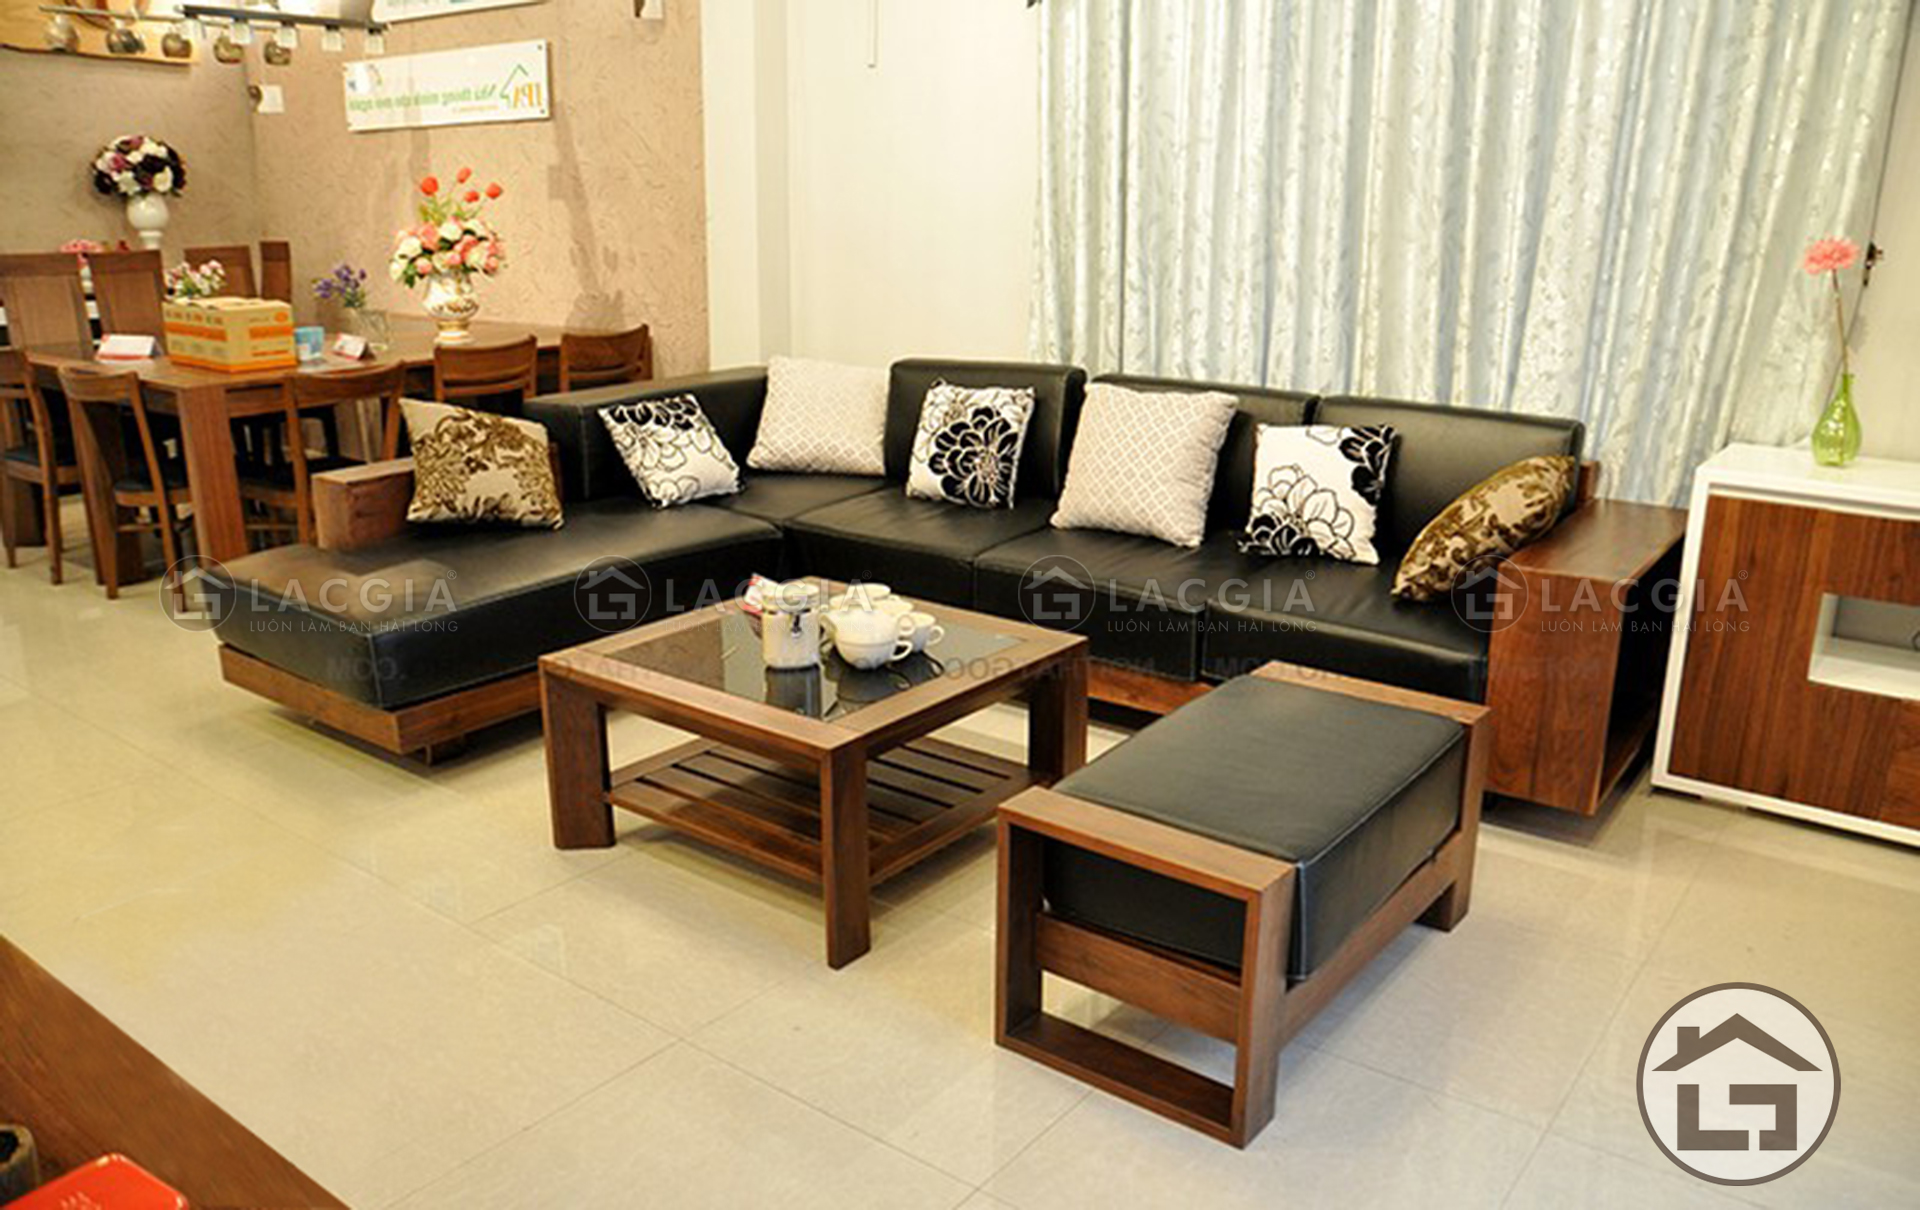 bo sofa go dep lg sf01 2 - Ưu điểm của bàn trà gỗ mặt kính mang lại cho phòng khách